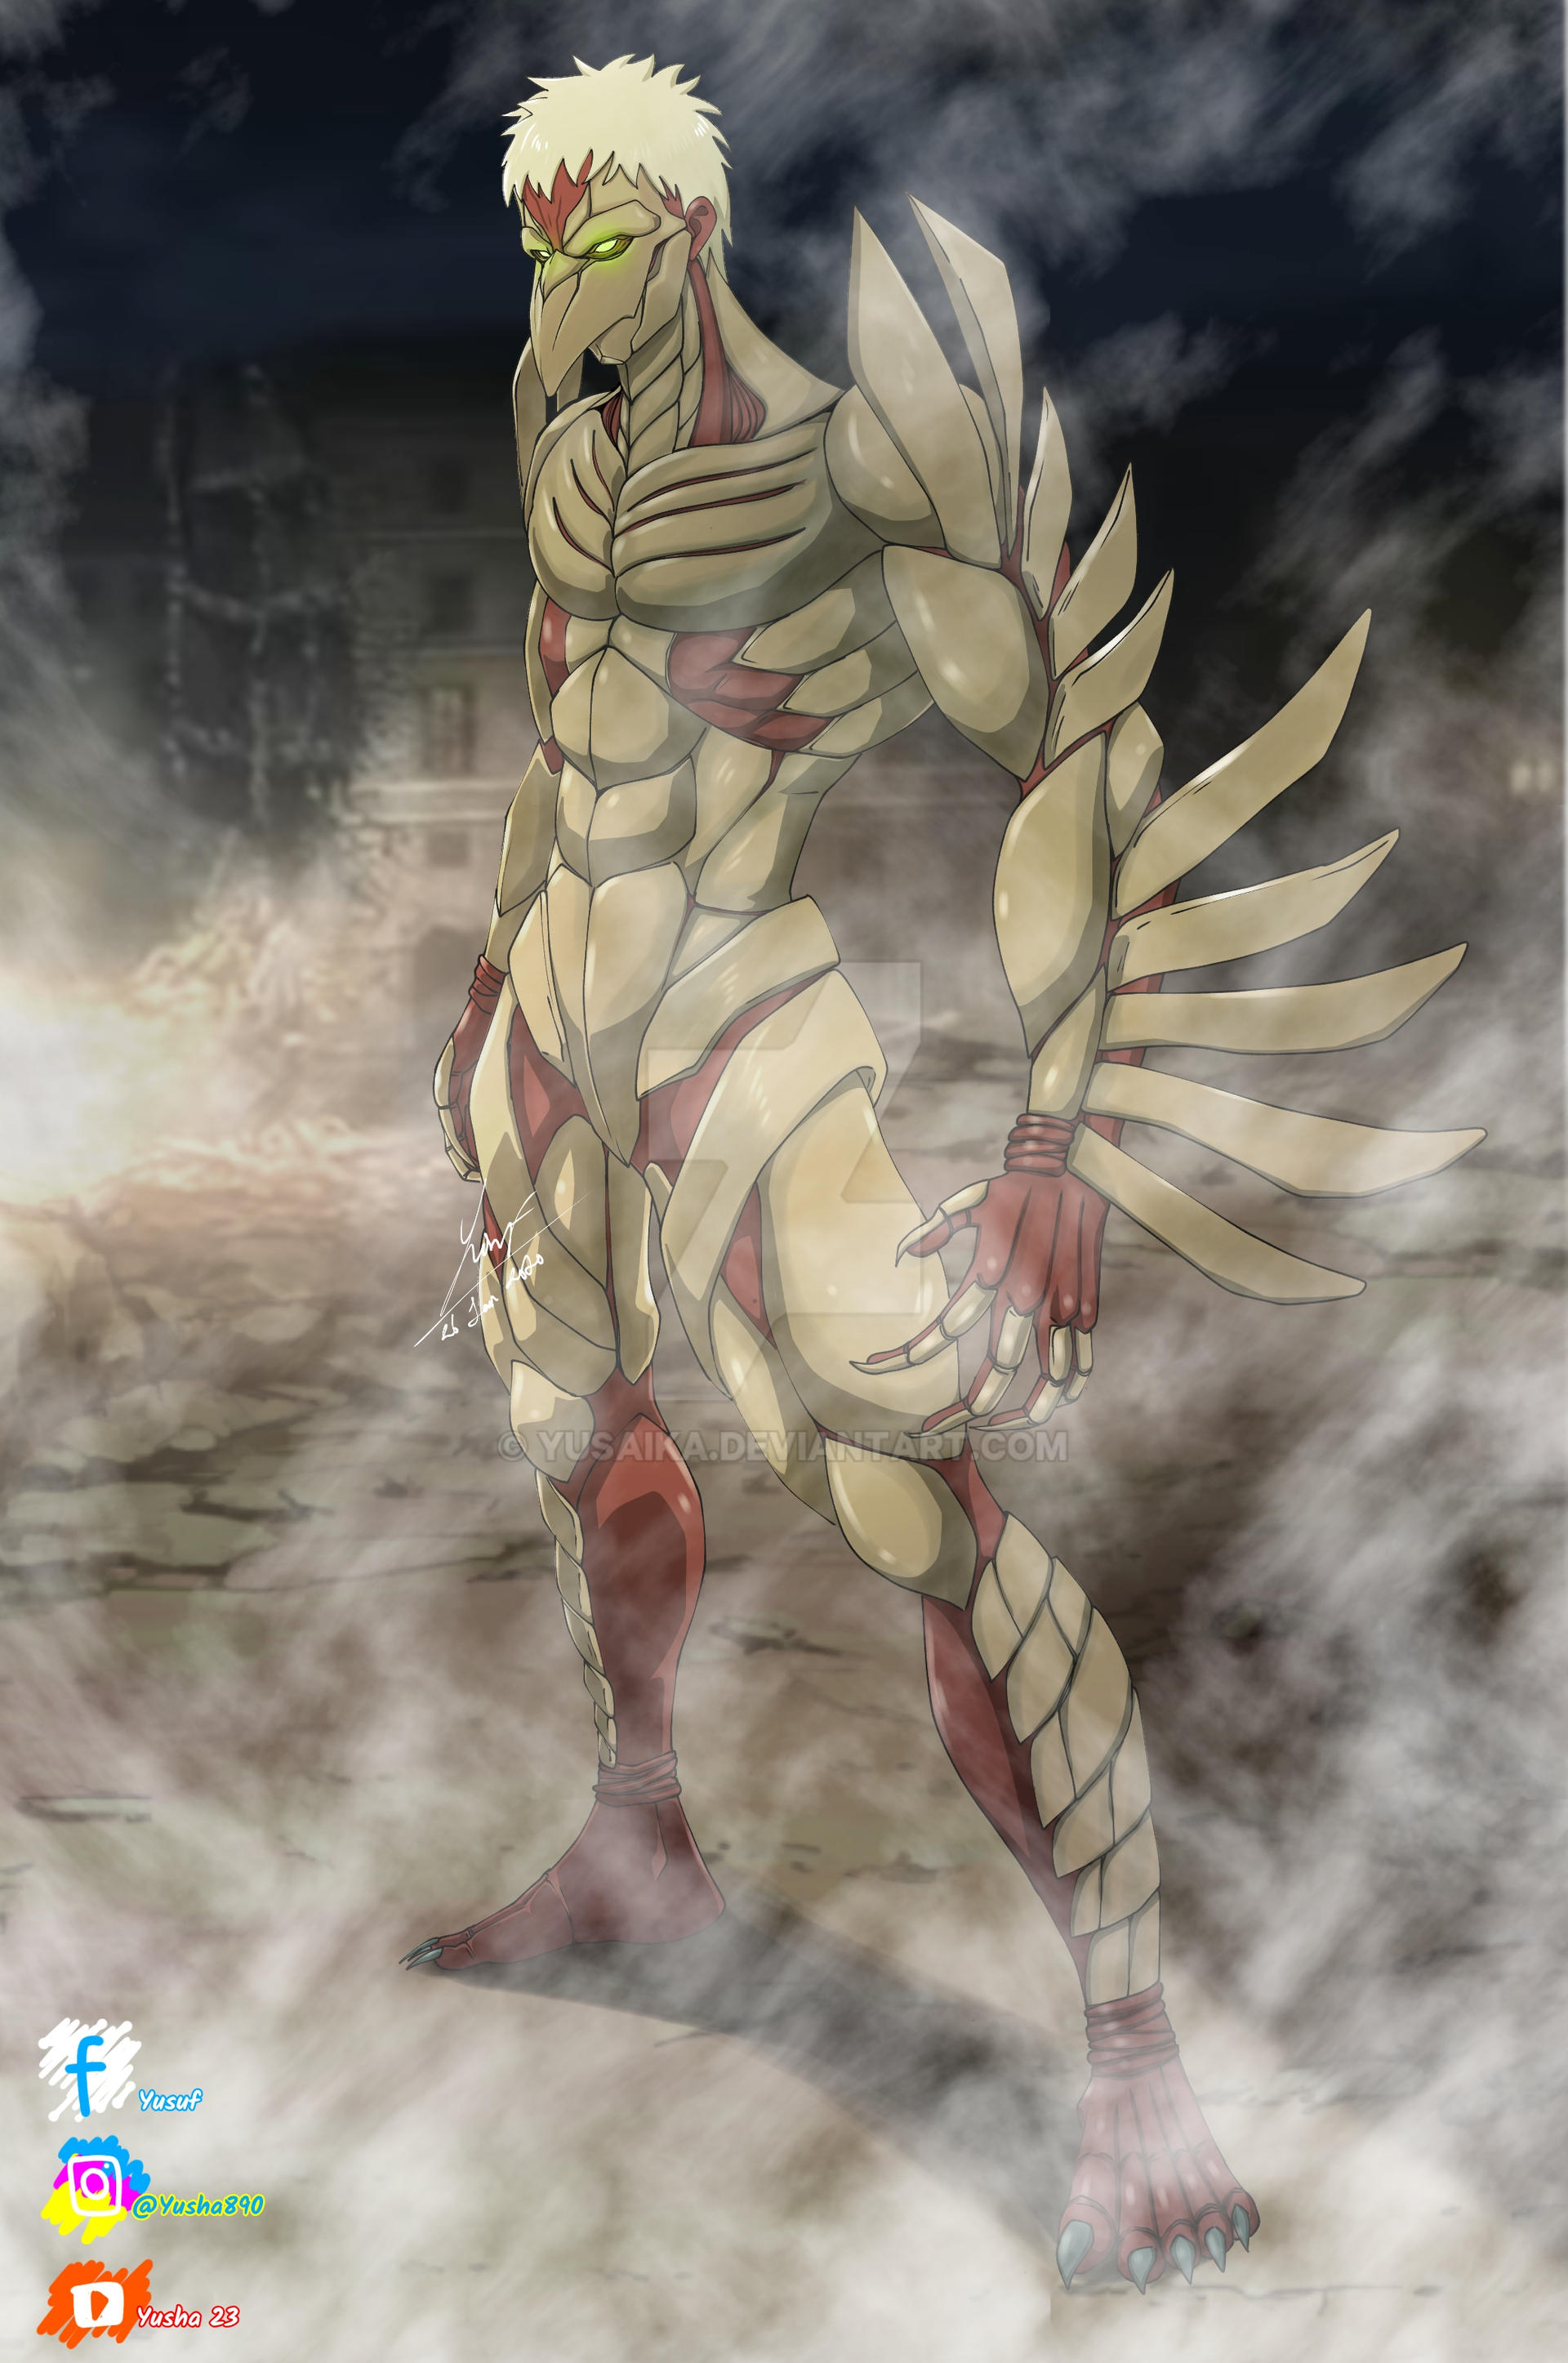 Shingeki no Kyojin oc : Predator Titan (season 4) by Lukimaro on